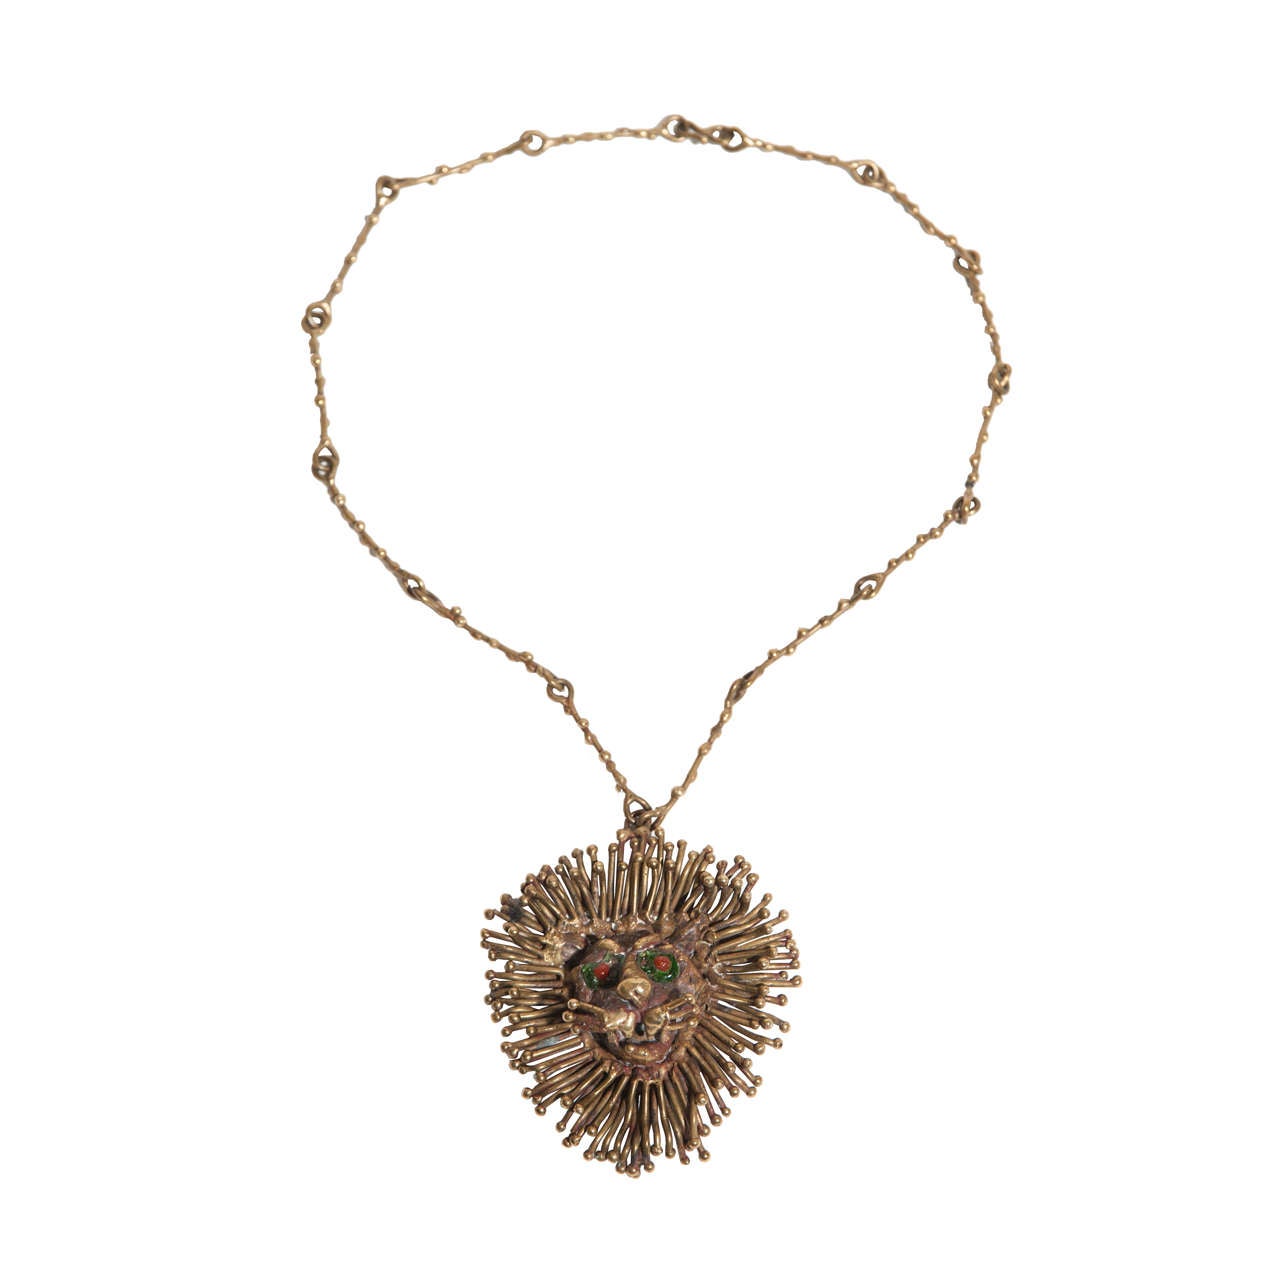 Pal Kepenyes Bronze Necklace